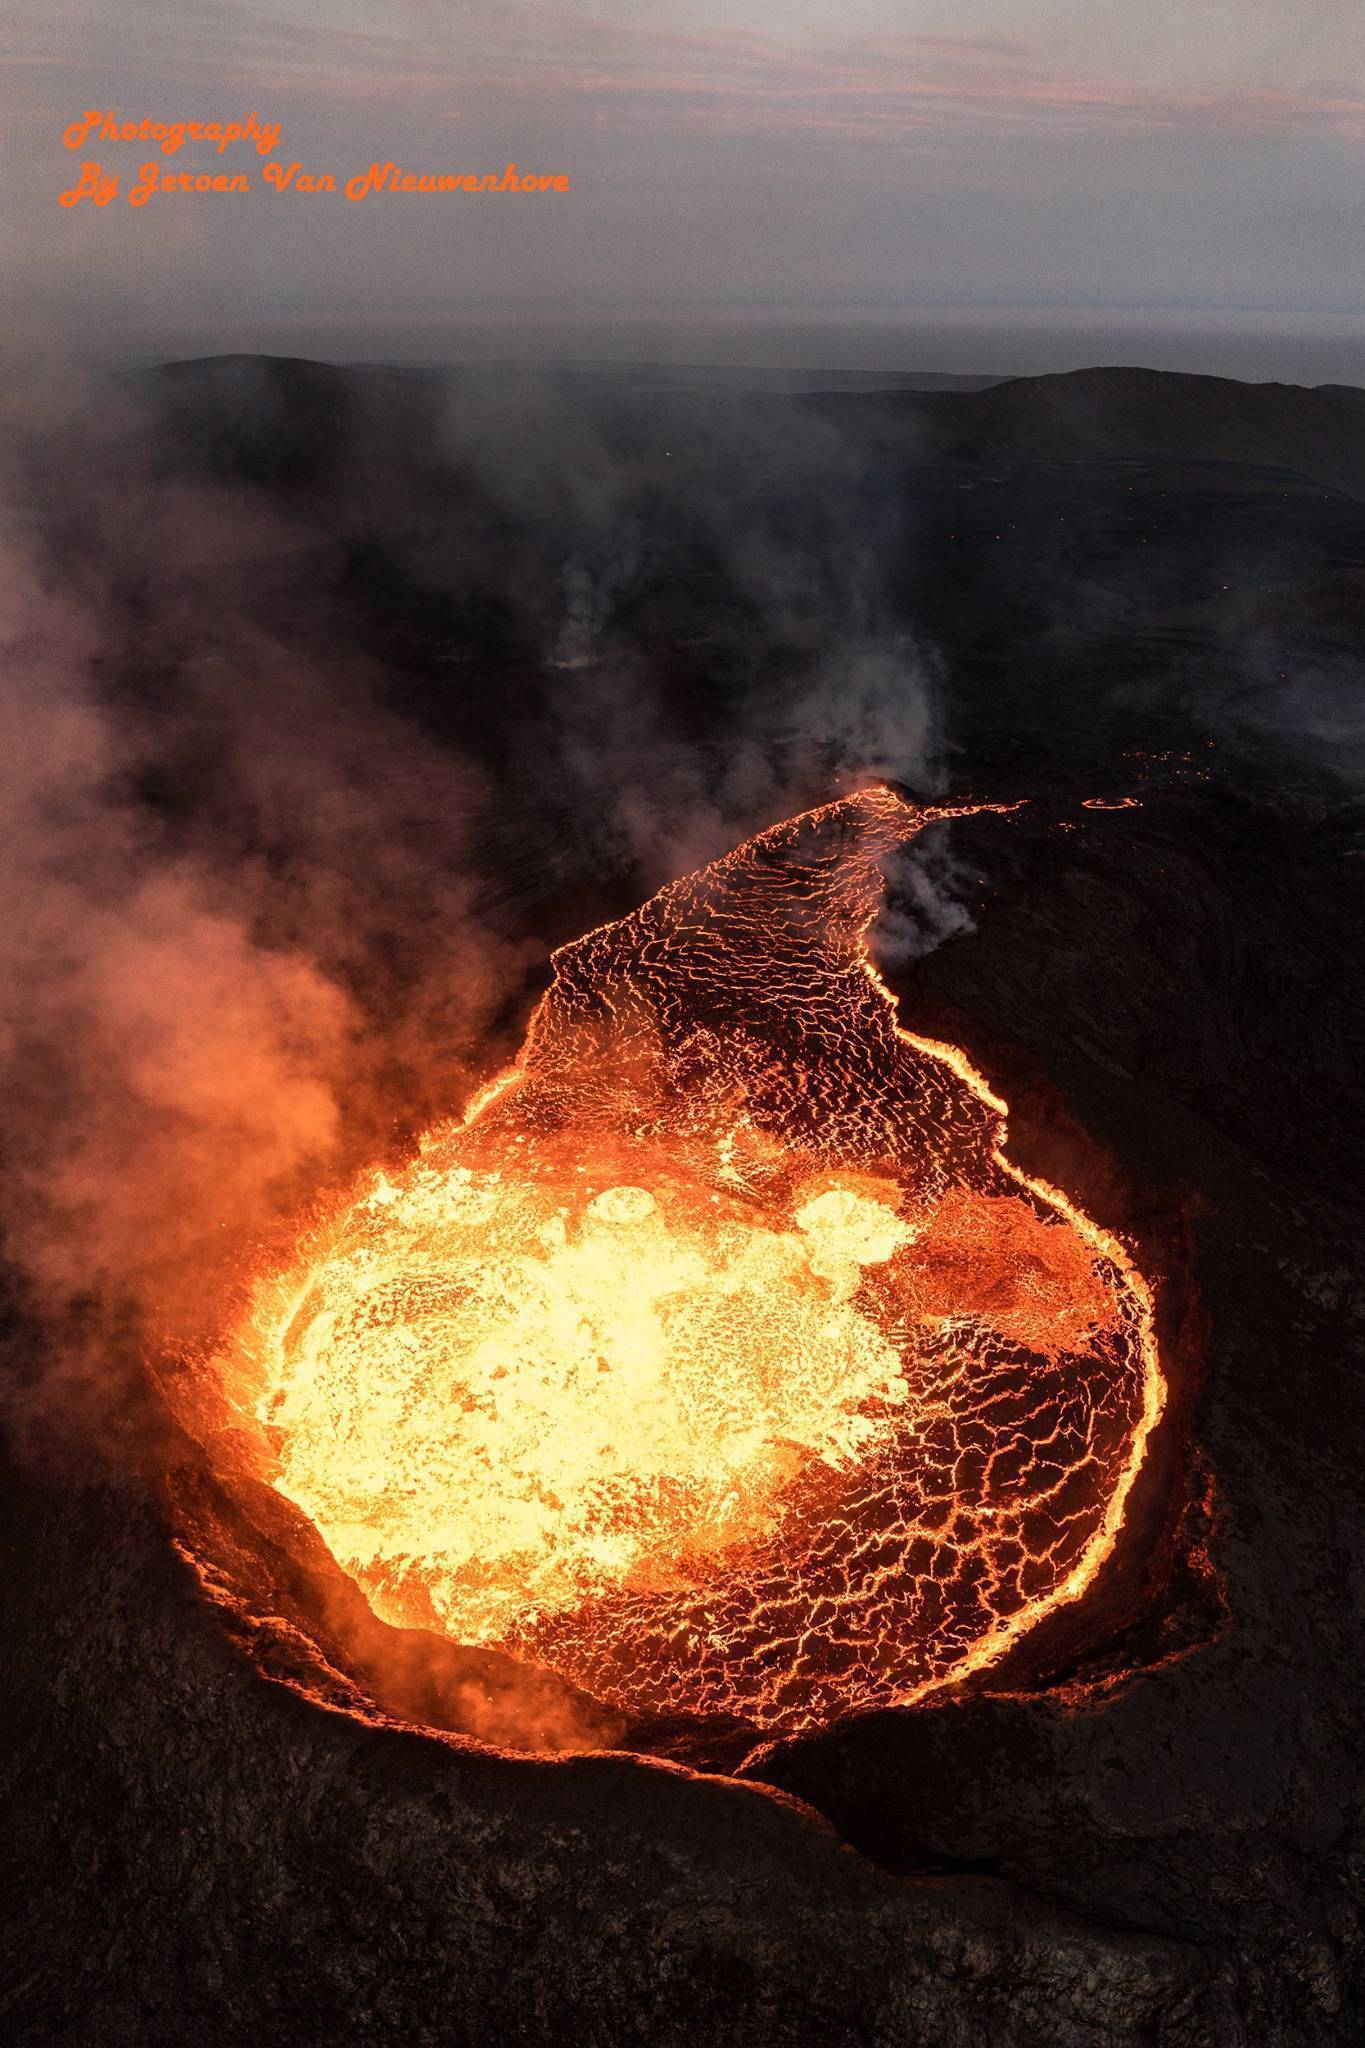 摄影图片欣赏:史上最震撼的火山喷发图景(上)